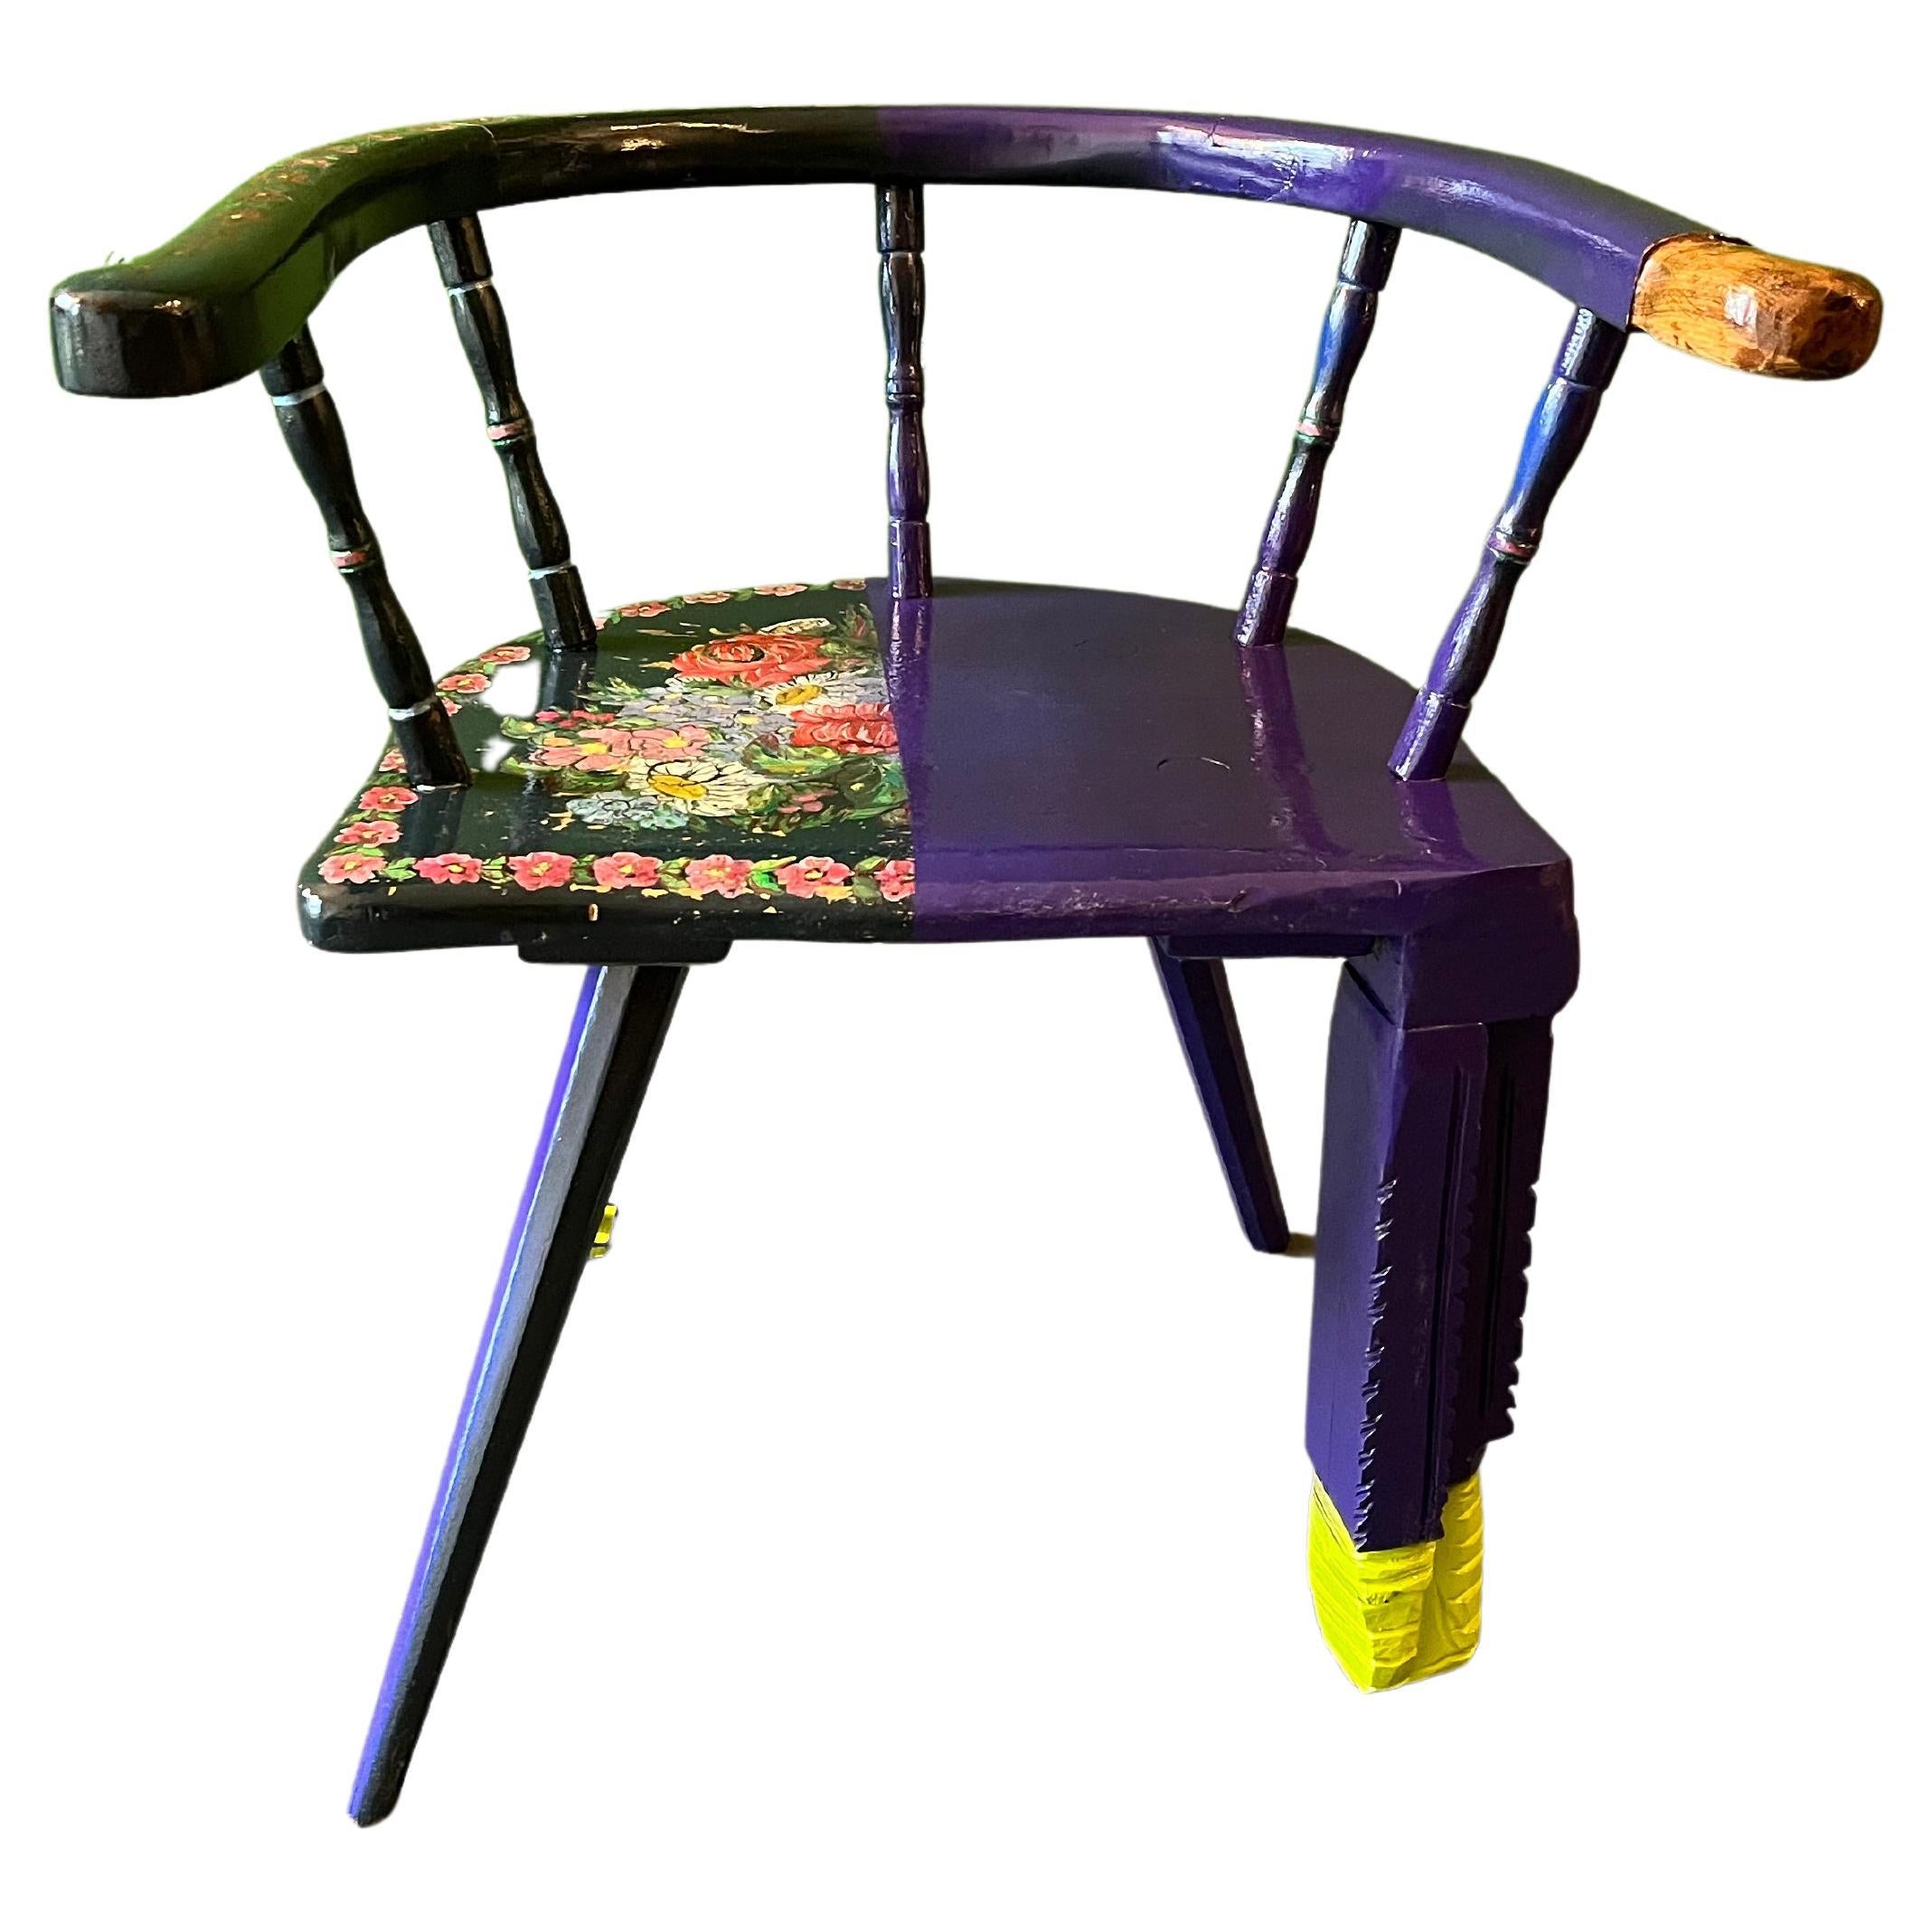 Chaise de ferme peinte à la main en Bavière, fleurs peintes à l'huile. Multi-lacqué, jambe sculpturale ajoutée.
Par mon travail, je transforme chaque chaise en un objet unique et individuel. Des chaises autrefois produites en série et homogènes